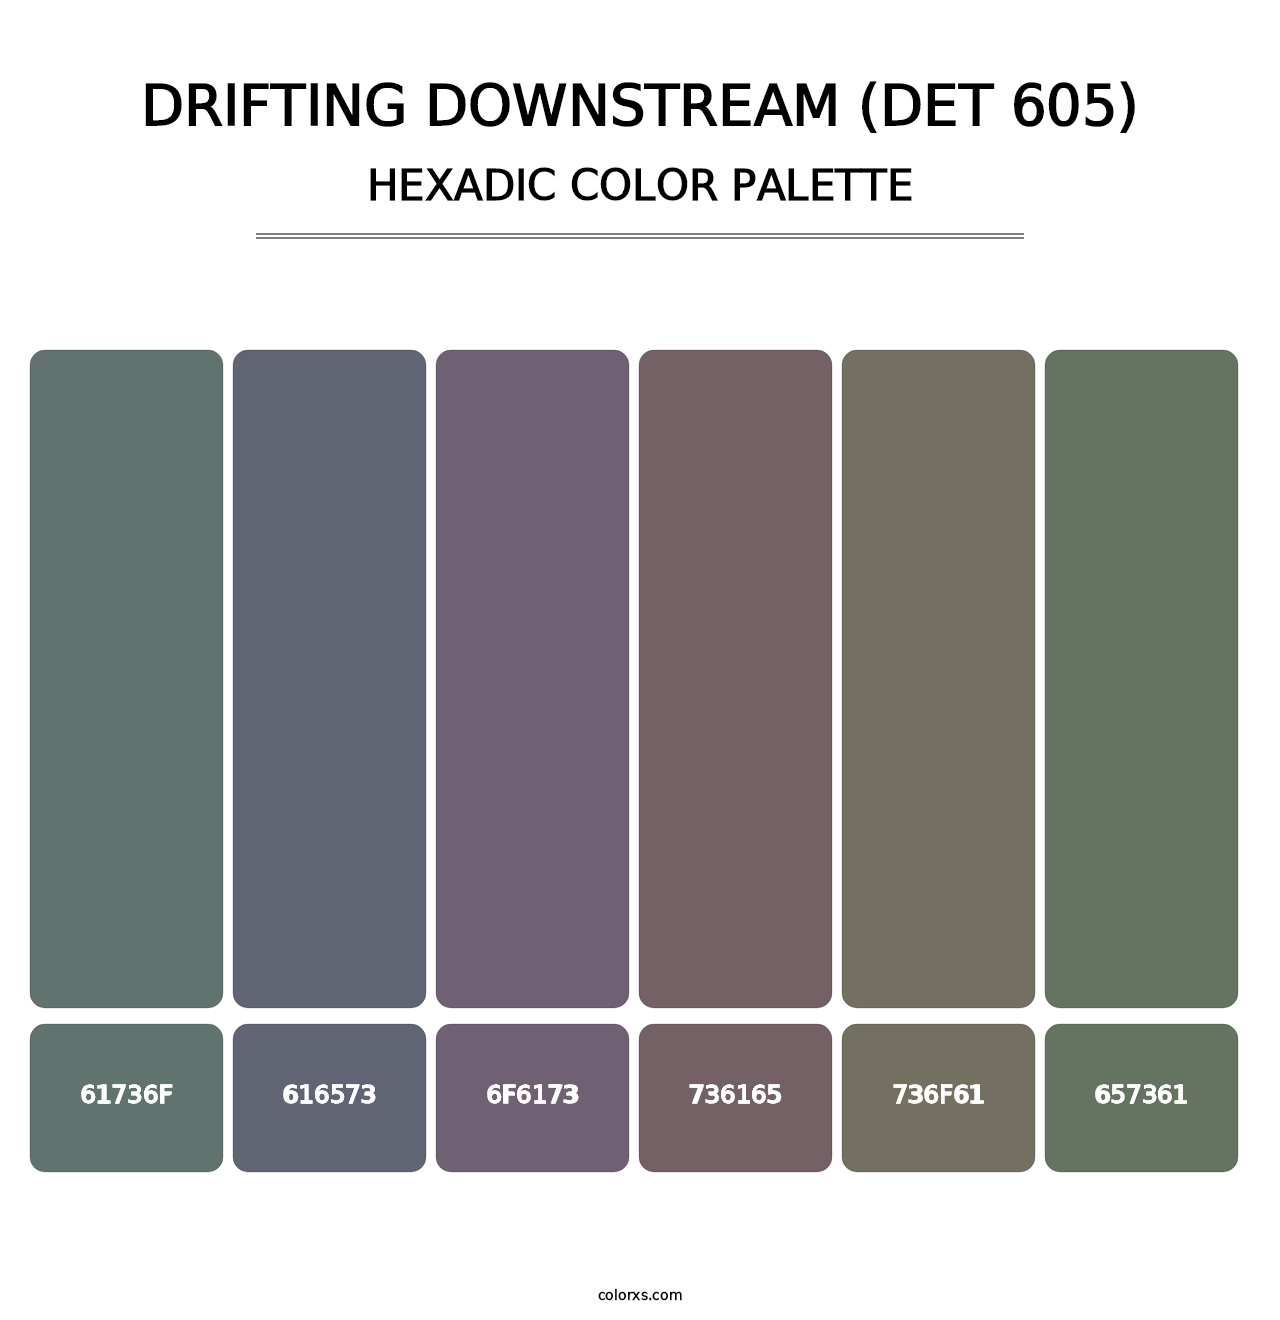 Drifting Downstream (DET 605) - Hexadic Color Palette